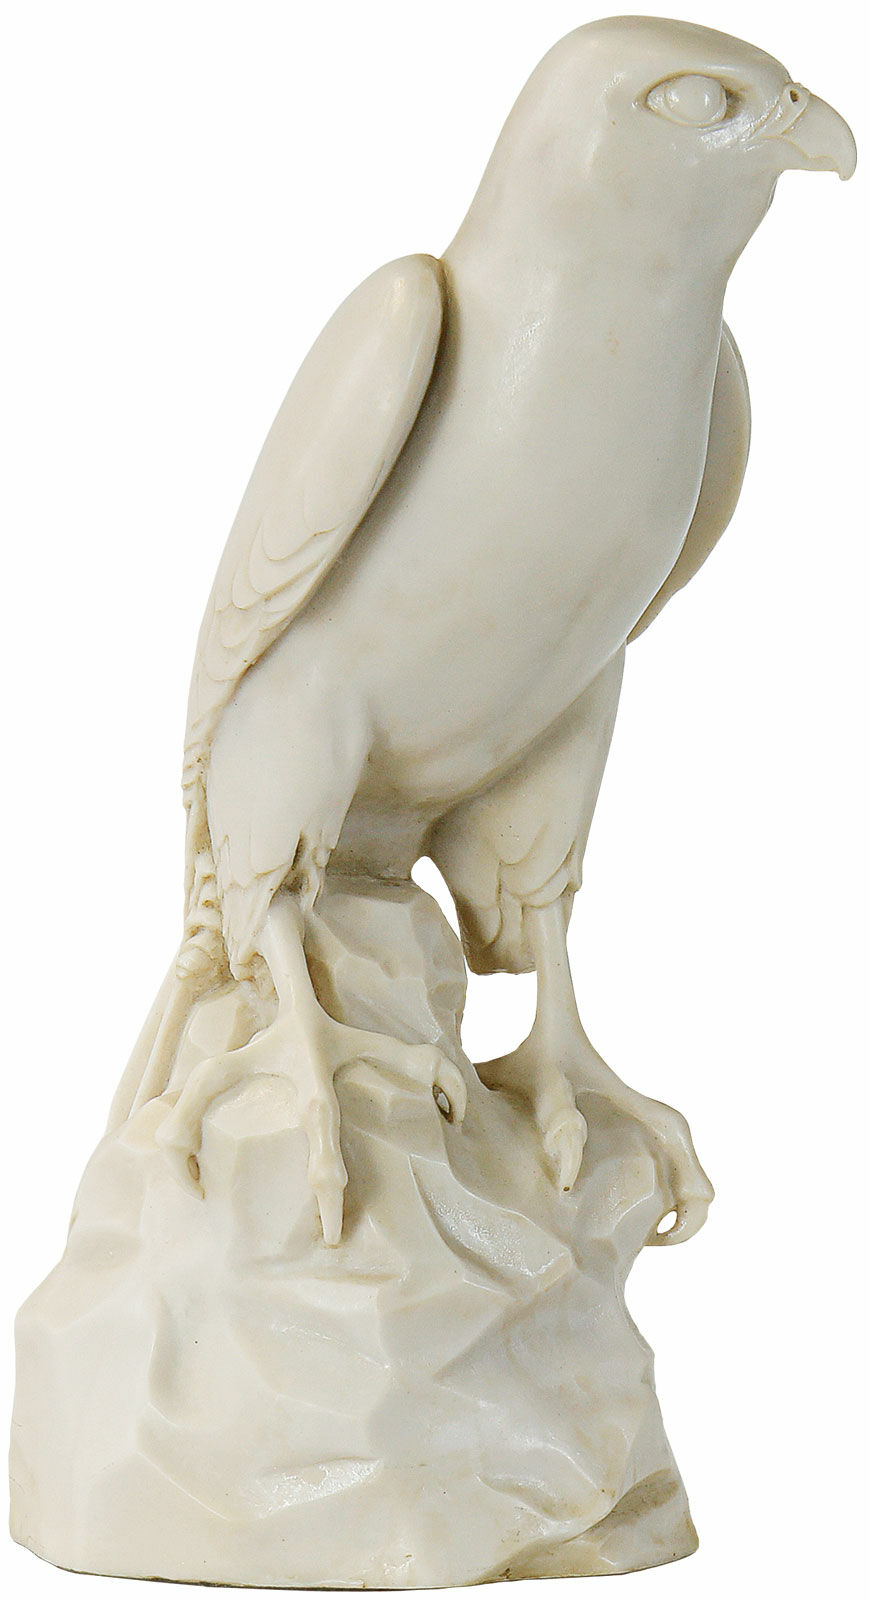 Sculpture "Falcon", artificial marble version by Thomas Schöne